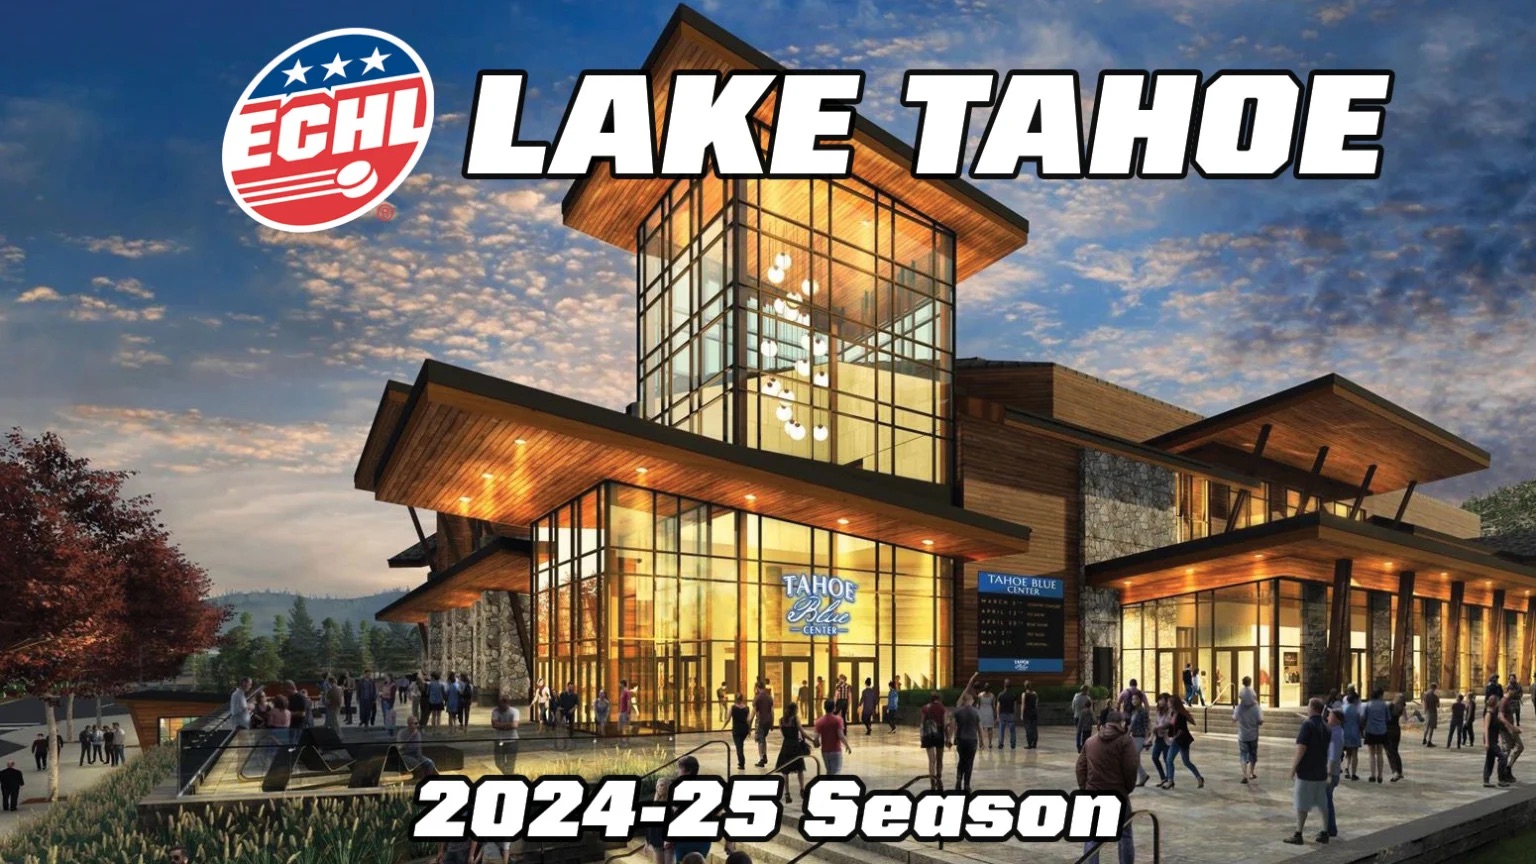 NHL's Vegas Golden Knights will visit South Lake Tahoe next week